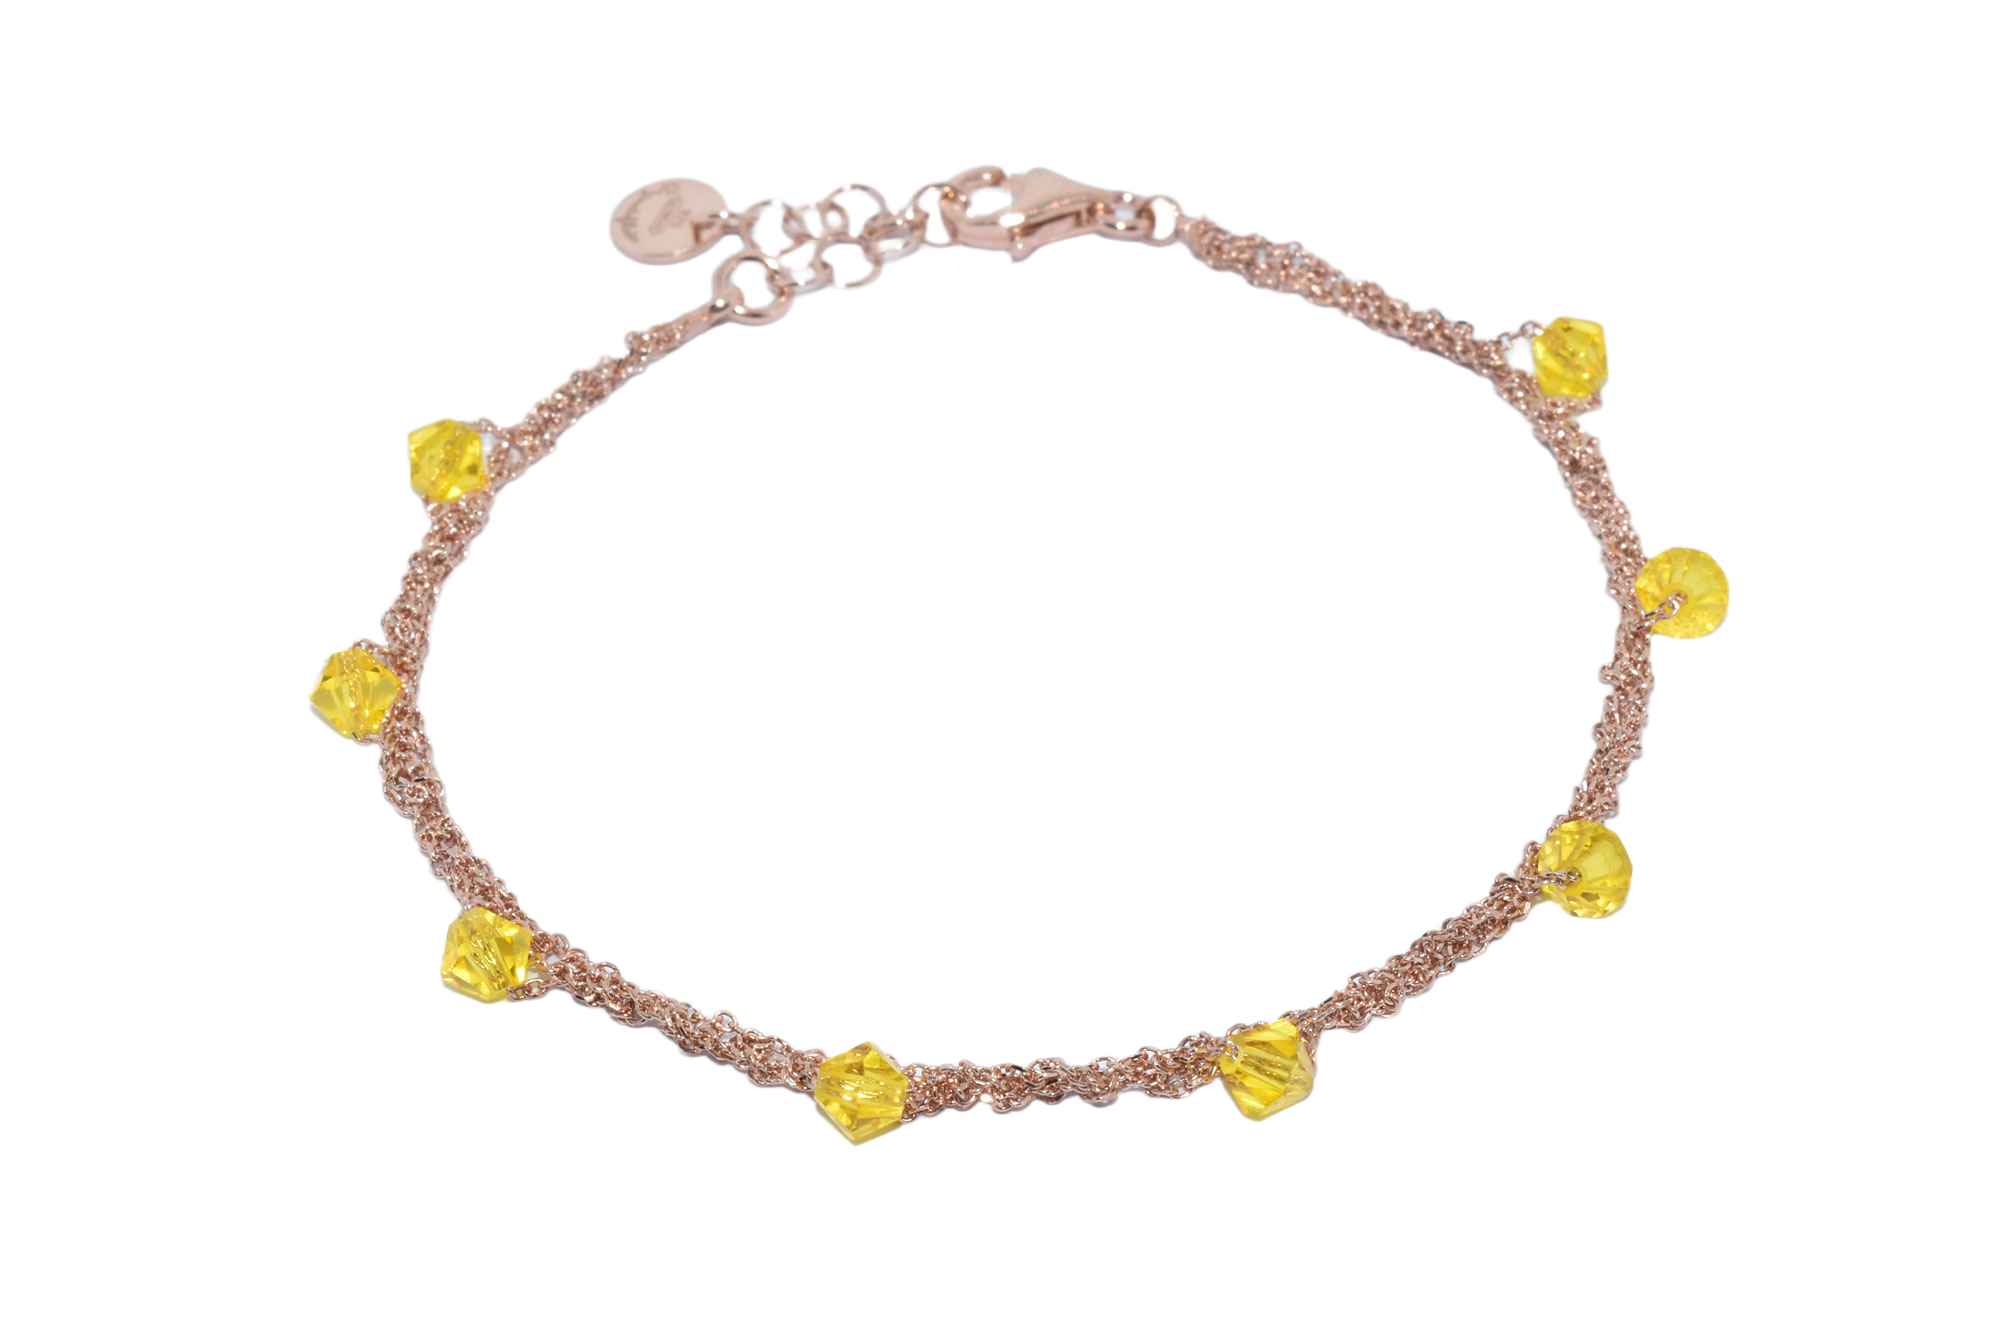 Bracciale-Uncinetto-rombi-giallo-Argentofilato-in-argento-925-oro-rosa